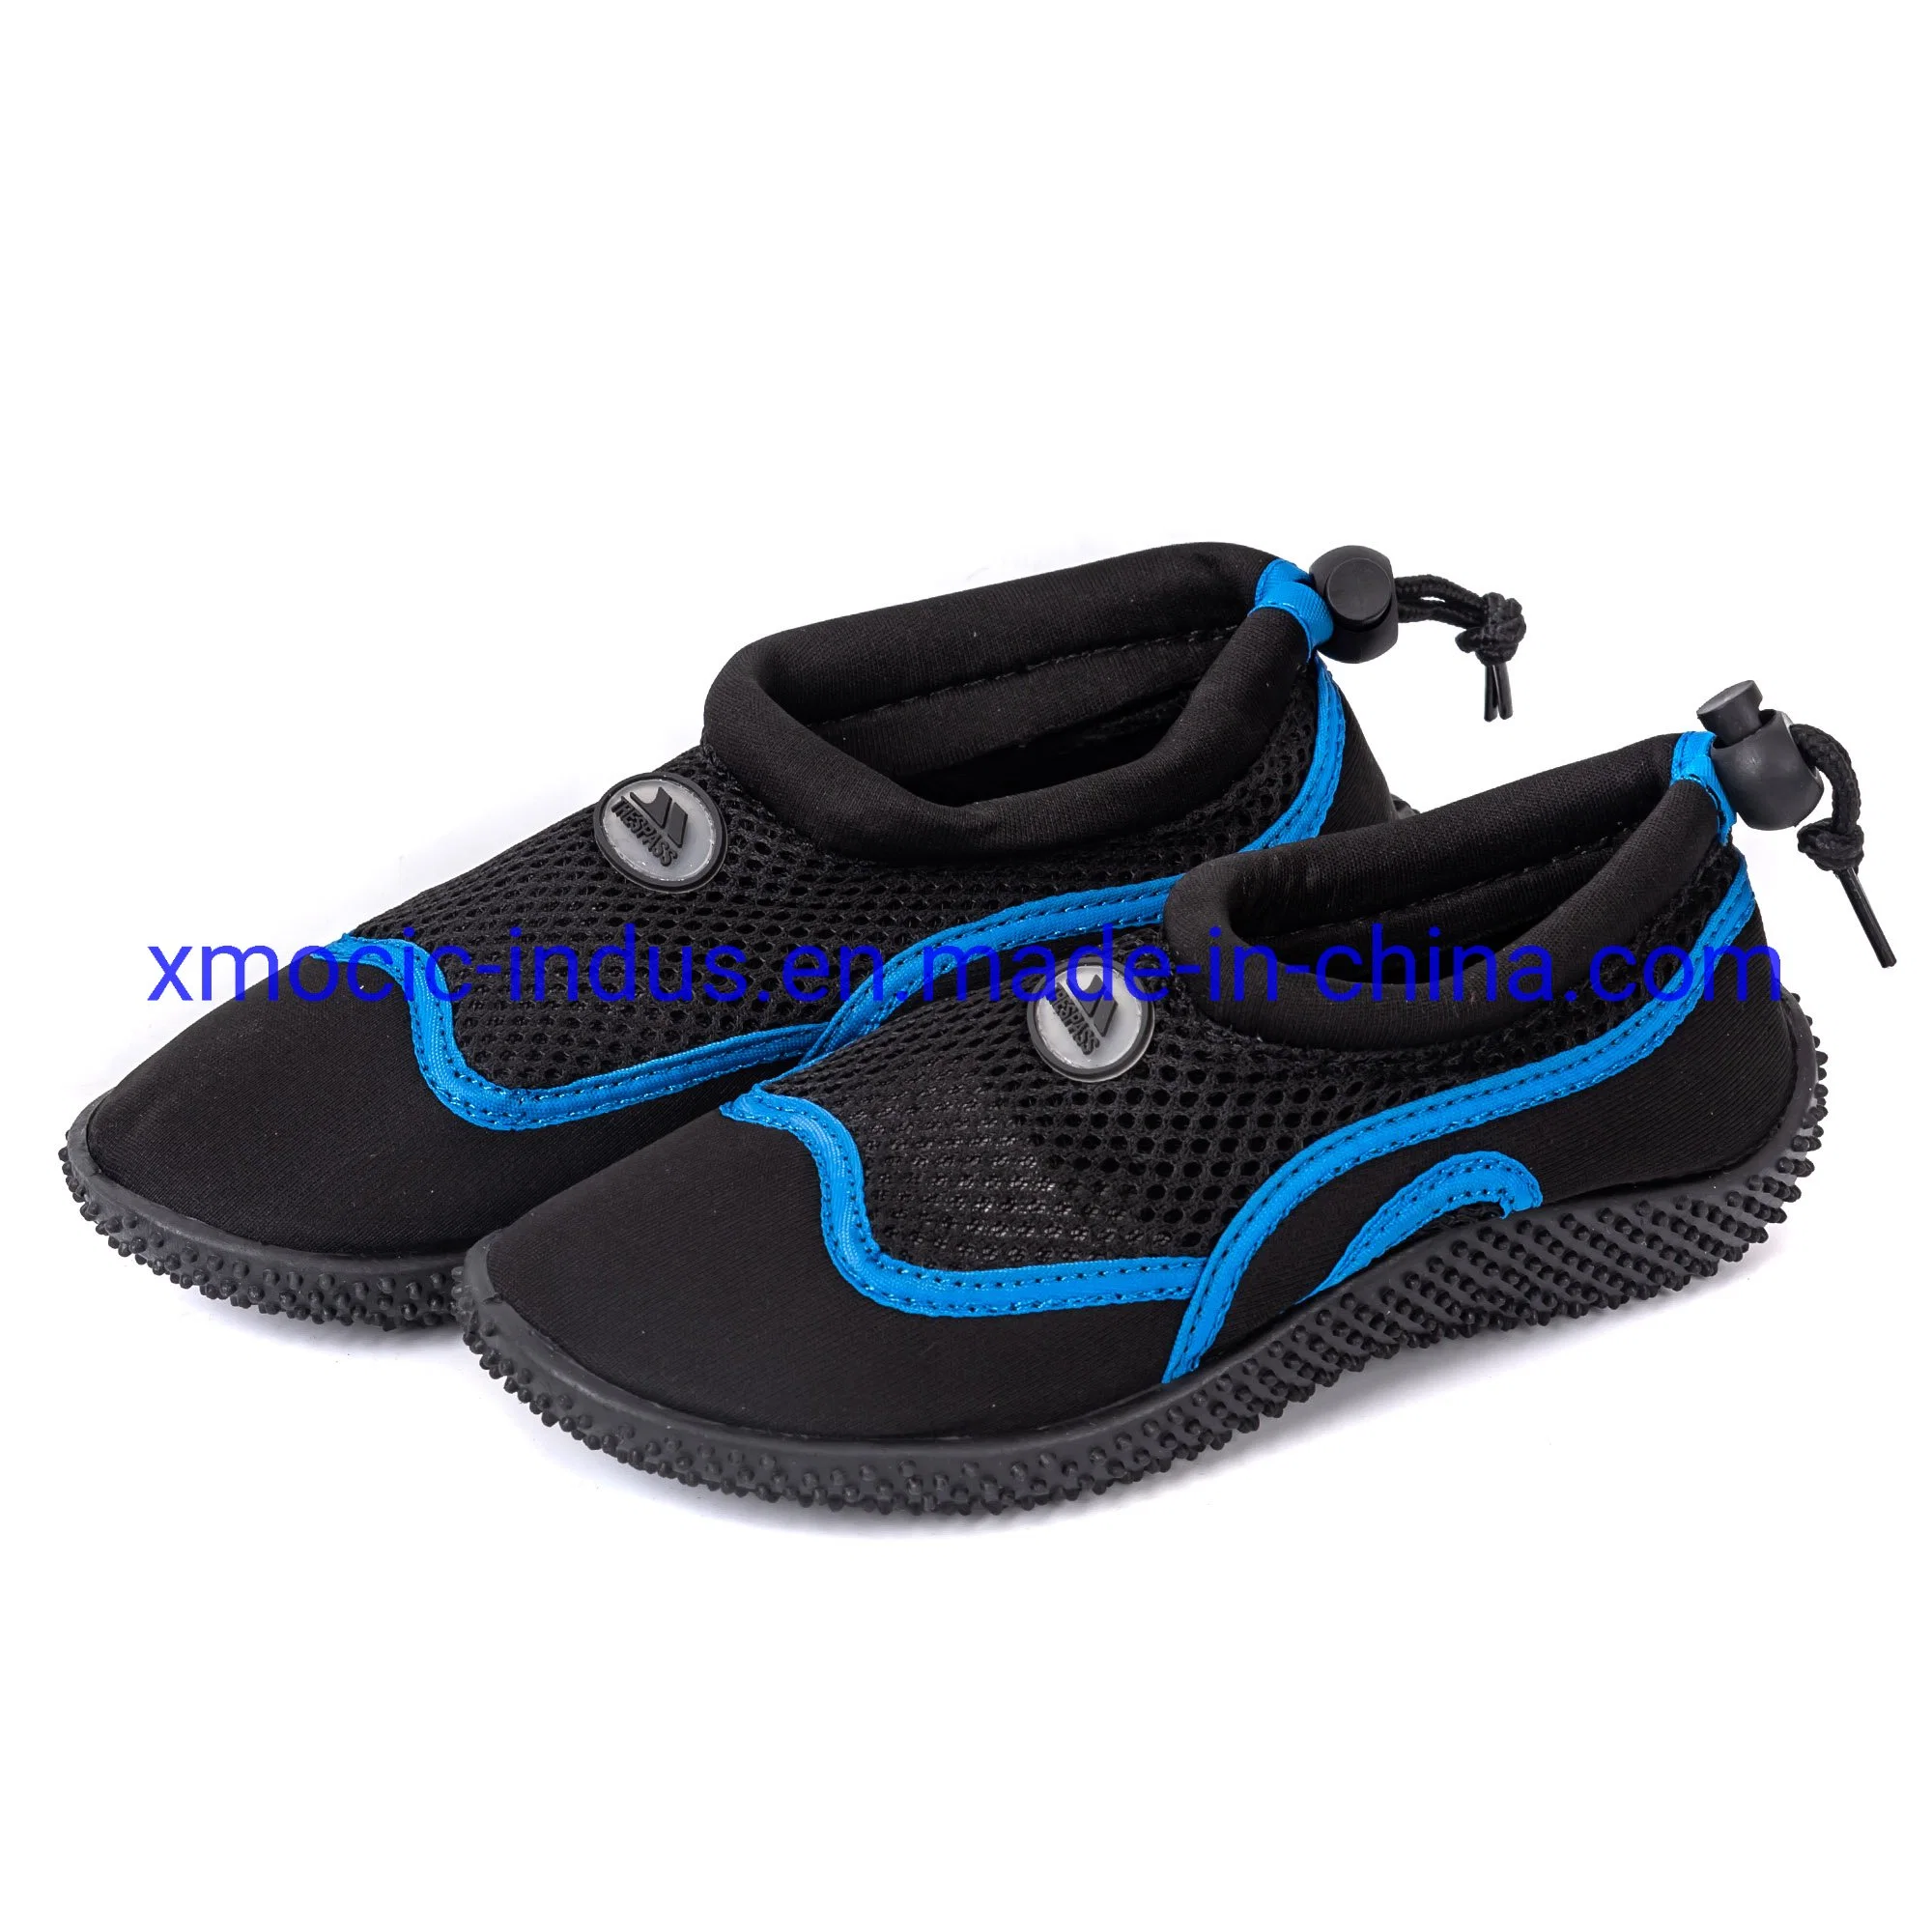 Novas sapatilhas Aqua em borracha personalizada e respirável, macias e descalças, para exterior Sapatilhas de surf Sneaker para mergulho Beach Nonlip Fitness